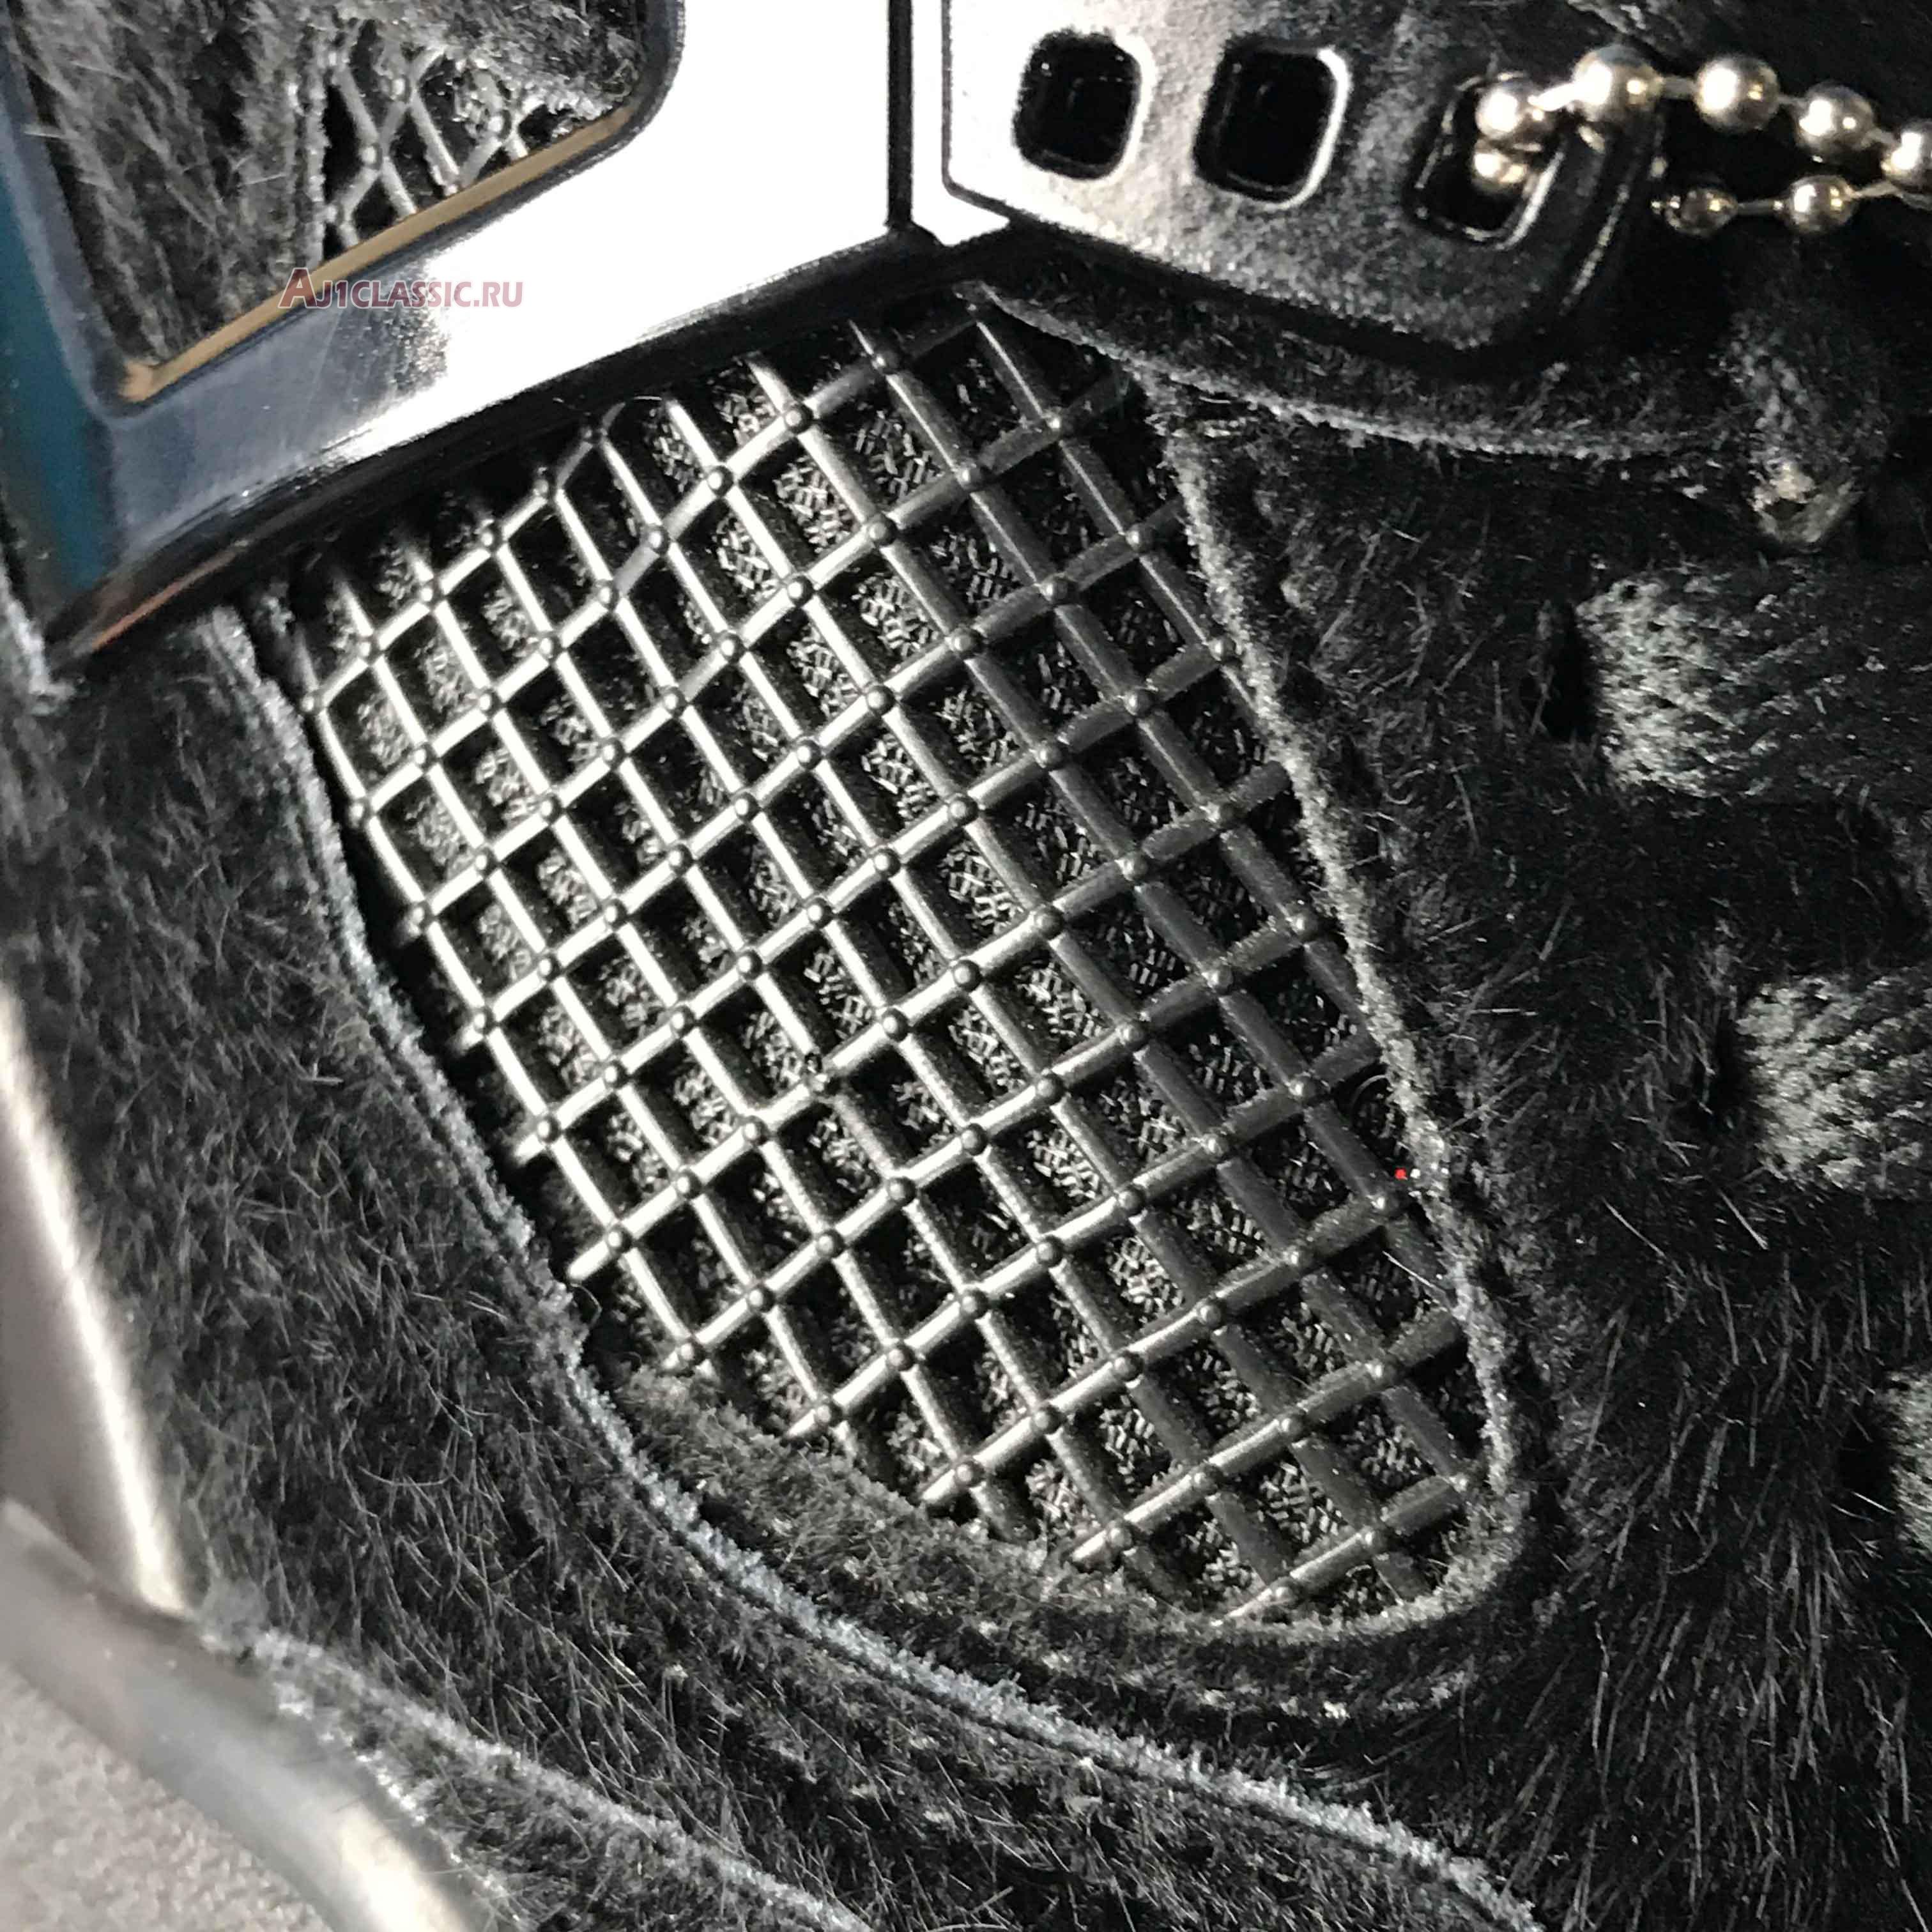 Olivia Kim x Wmns Air Jordan 4 Retro No Cover CK2925-001 Black/Black/Black Sneakers